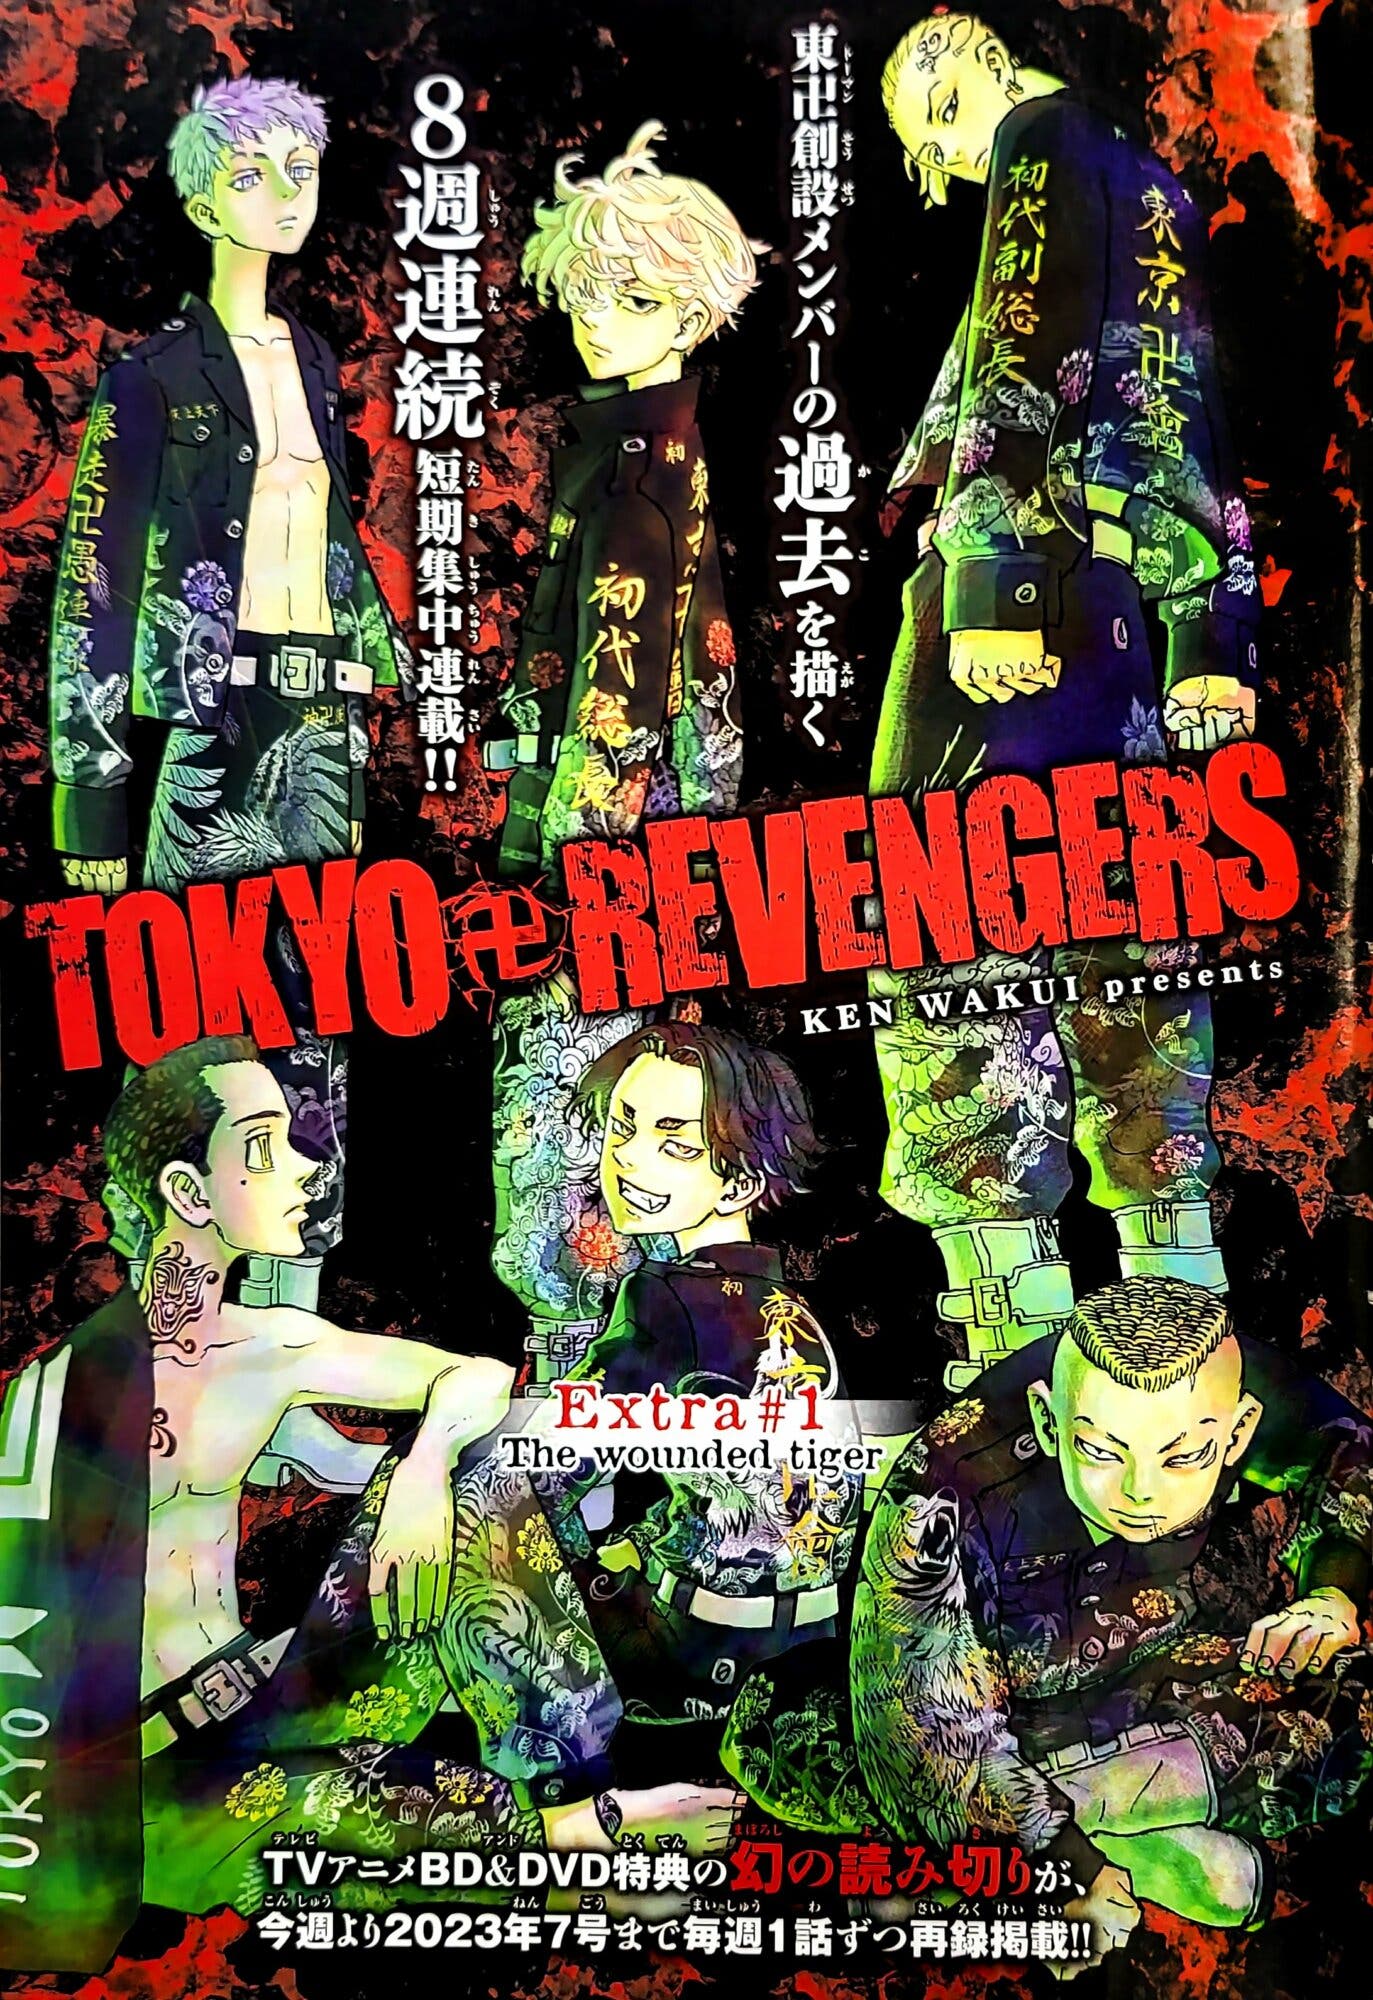 La Temporada 2 de Tokyo Revengers calienta motores con un primer tráiler  cargado de emociones